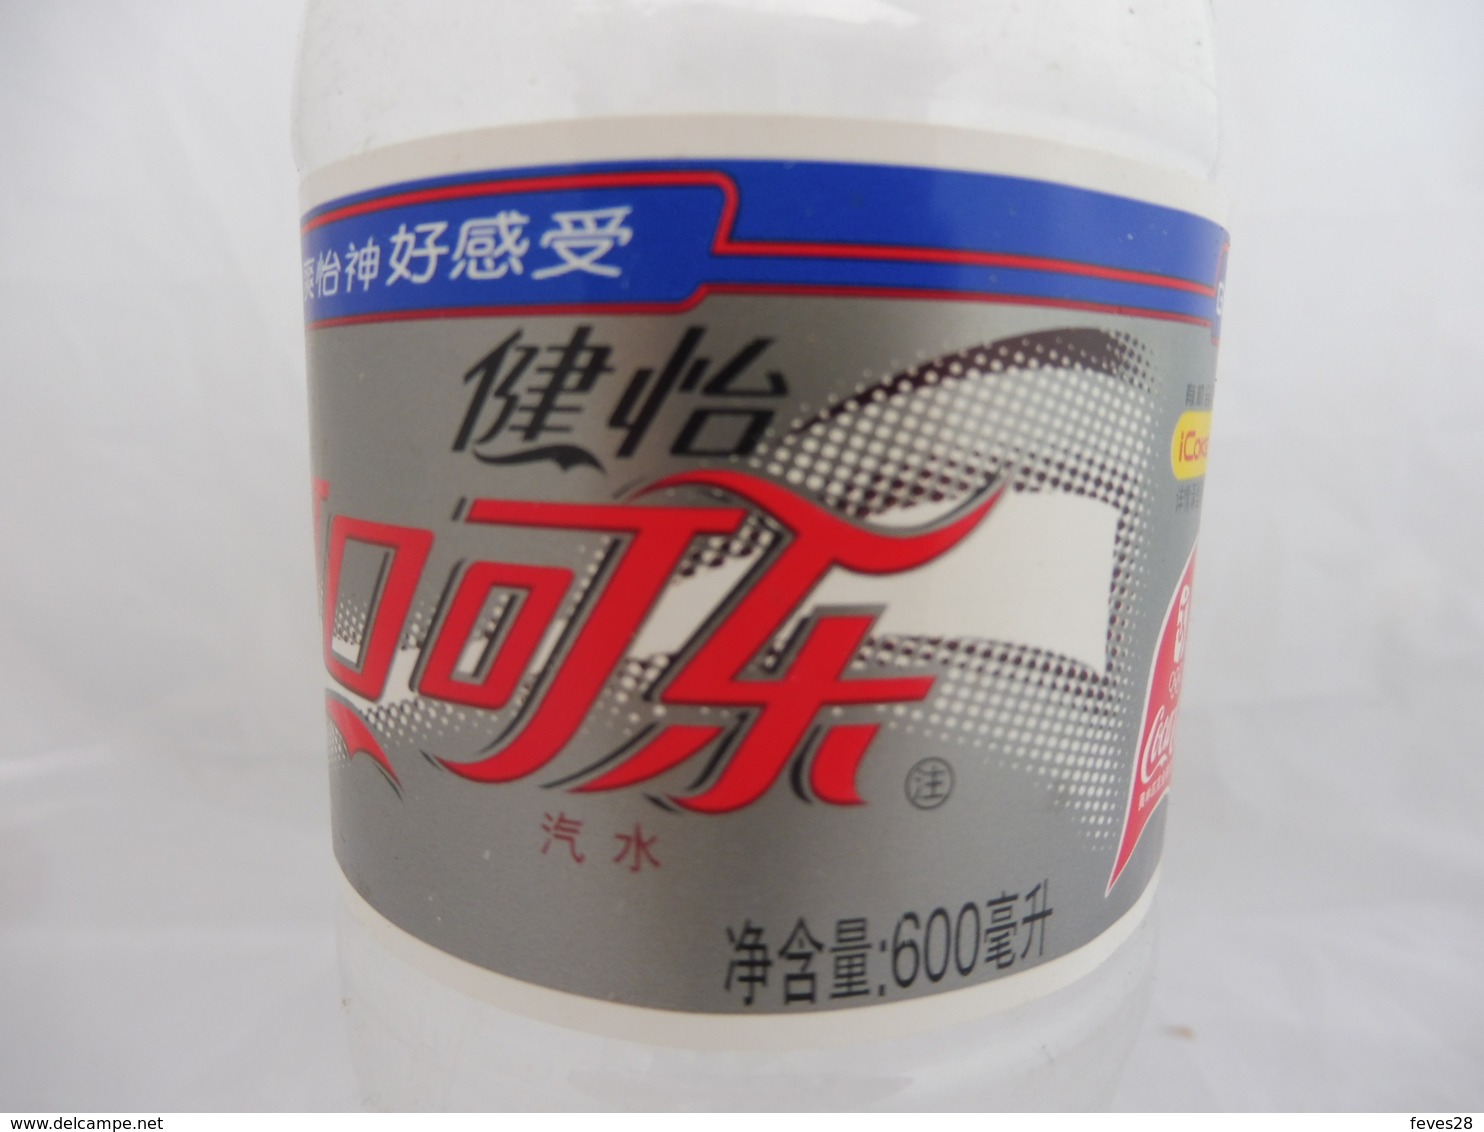 COCA COLA® LIGHT BOUTEILLE PLASTIQUE VIDE 2007 CHINE 0.6L - Bottles